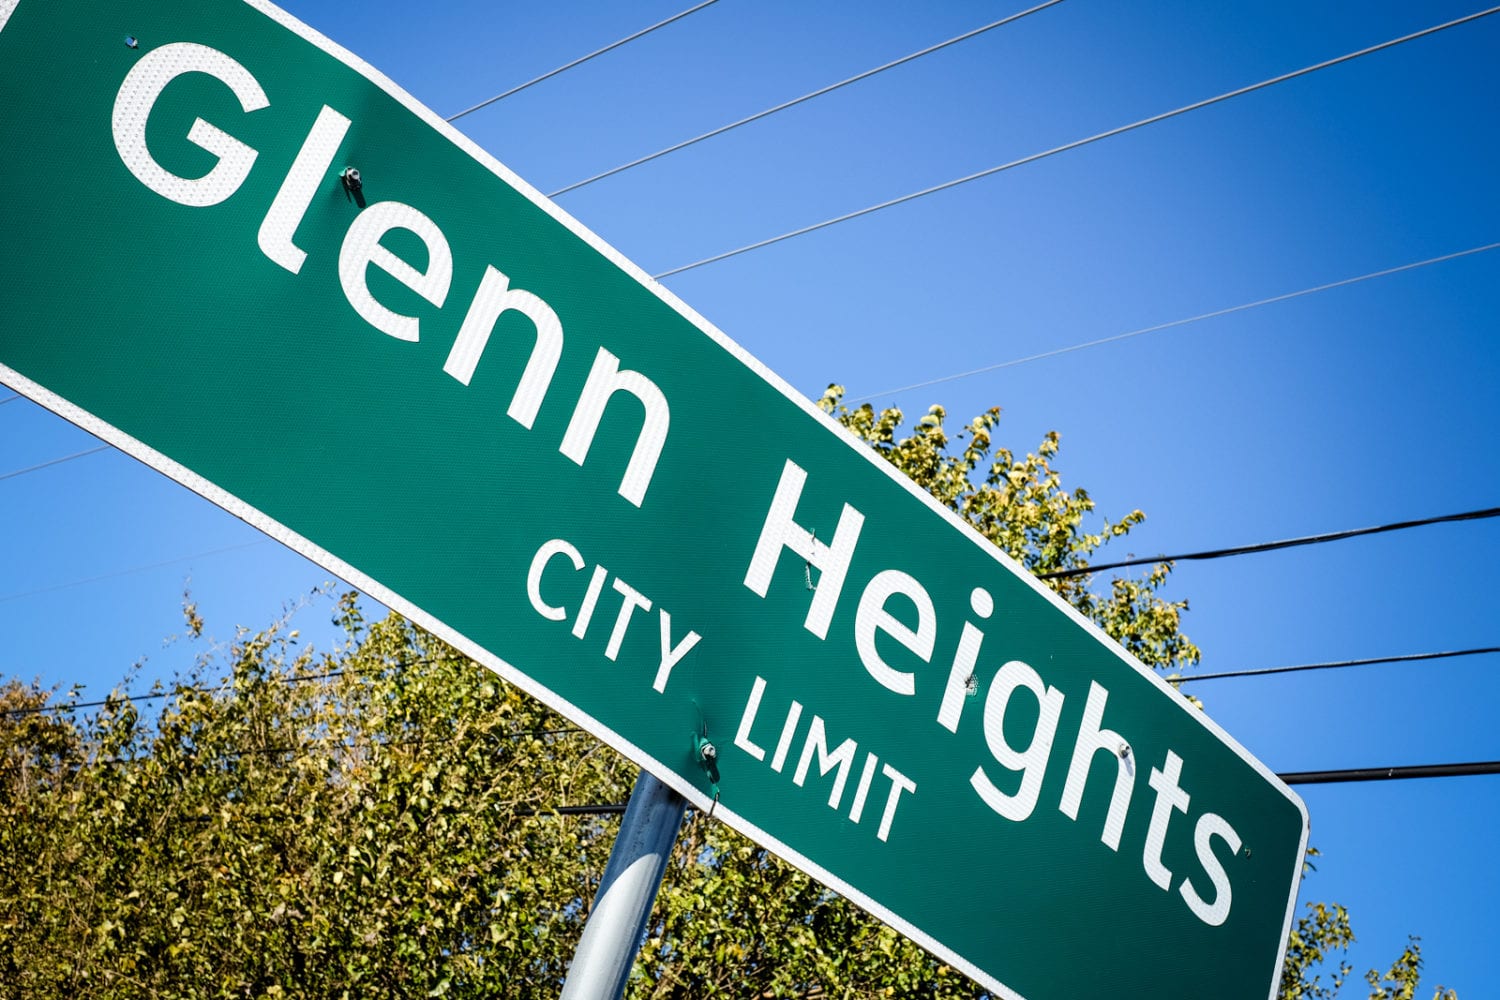 Glenn Heights Tax Rate